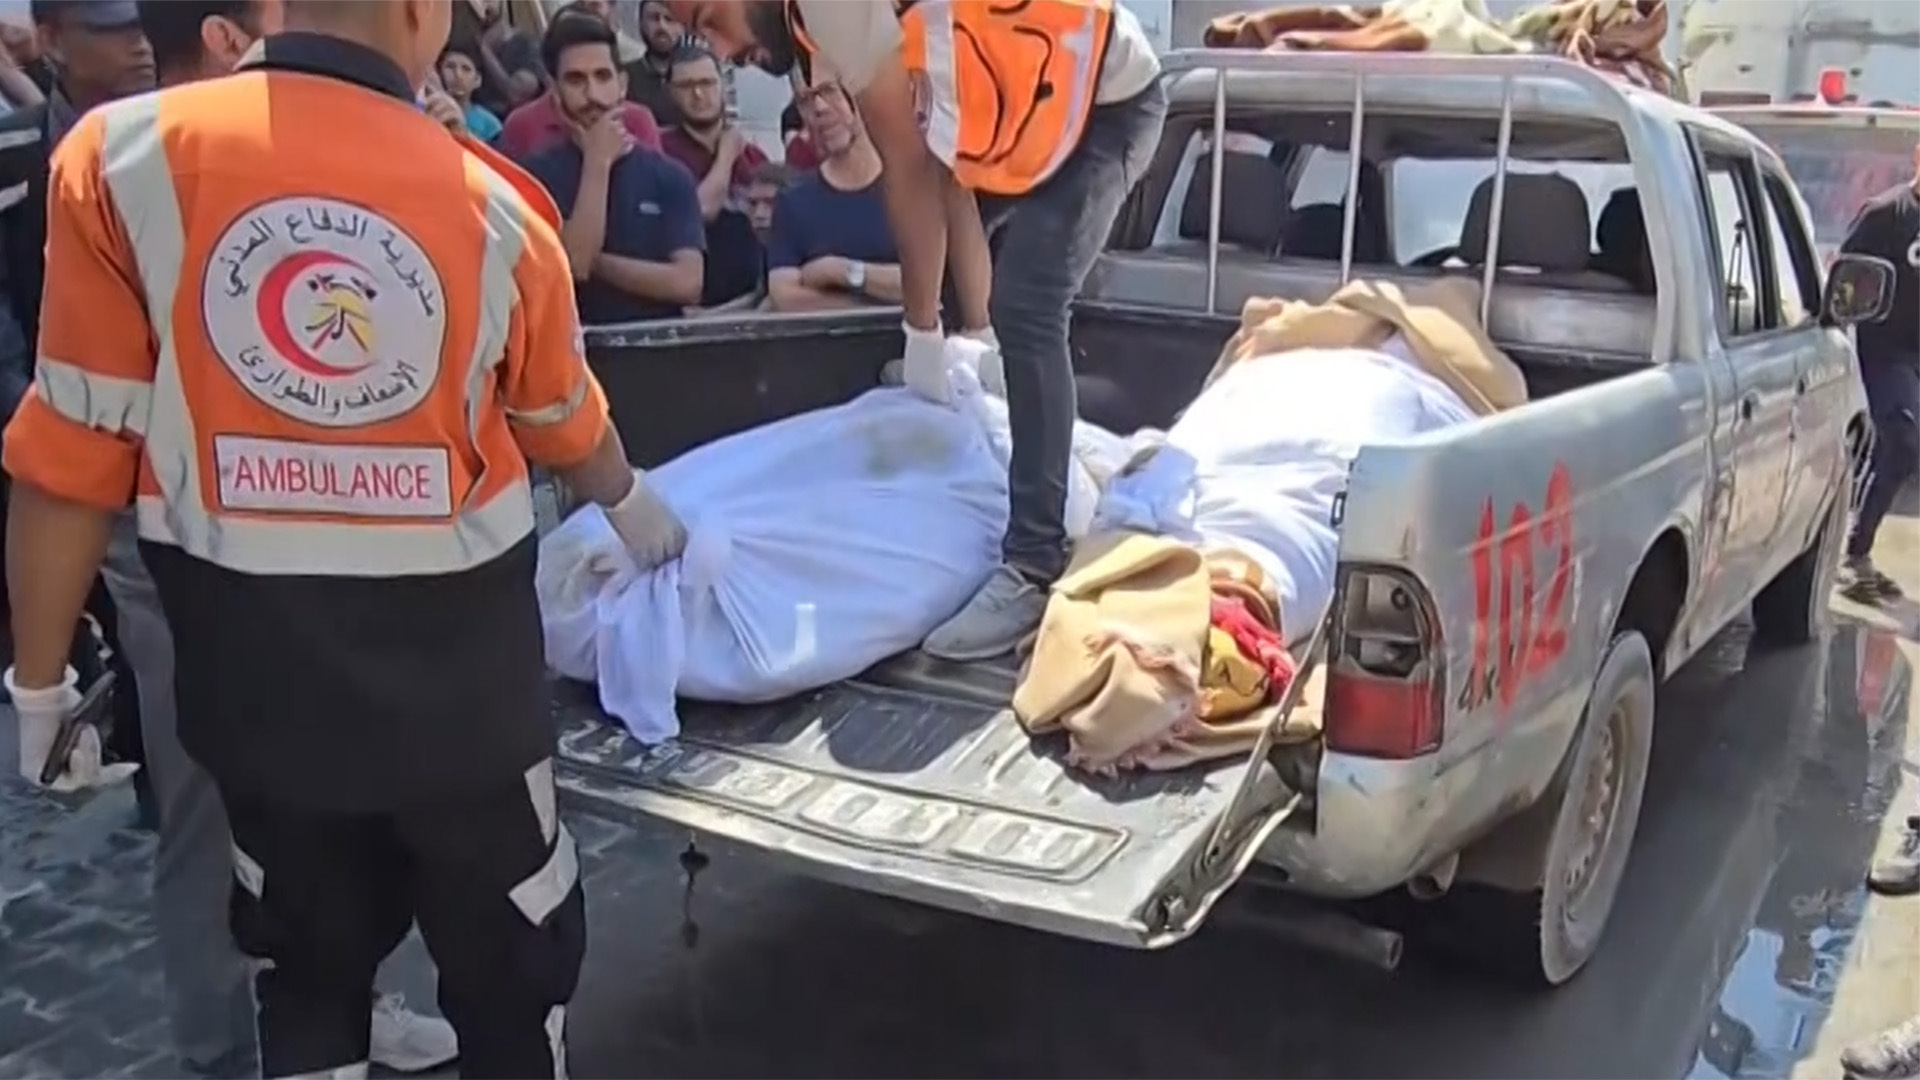 انتشال جثامين عشرات الشهداء من جباليا بعد انسحاب قوات الاحتلال | التقارير الإخبارية – البوكس نيوز